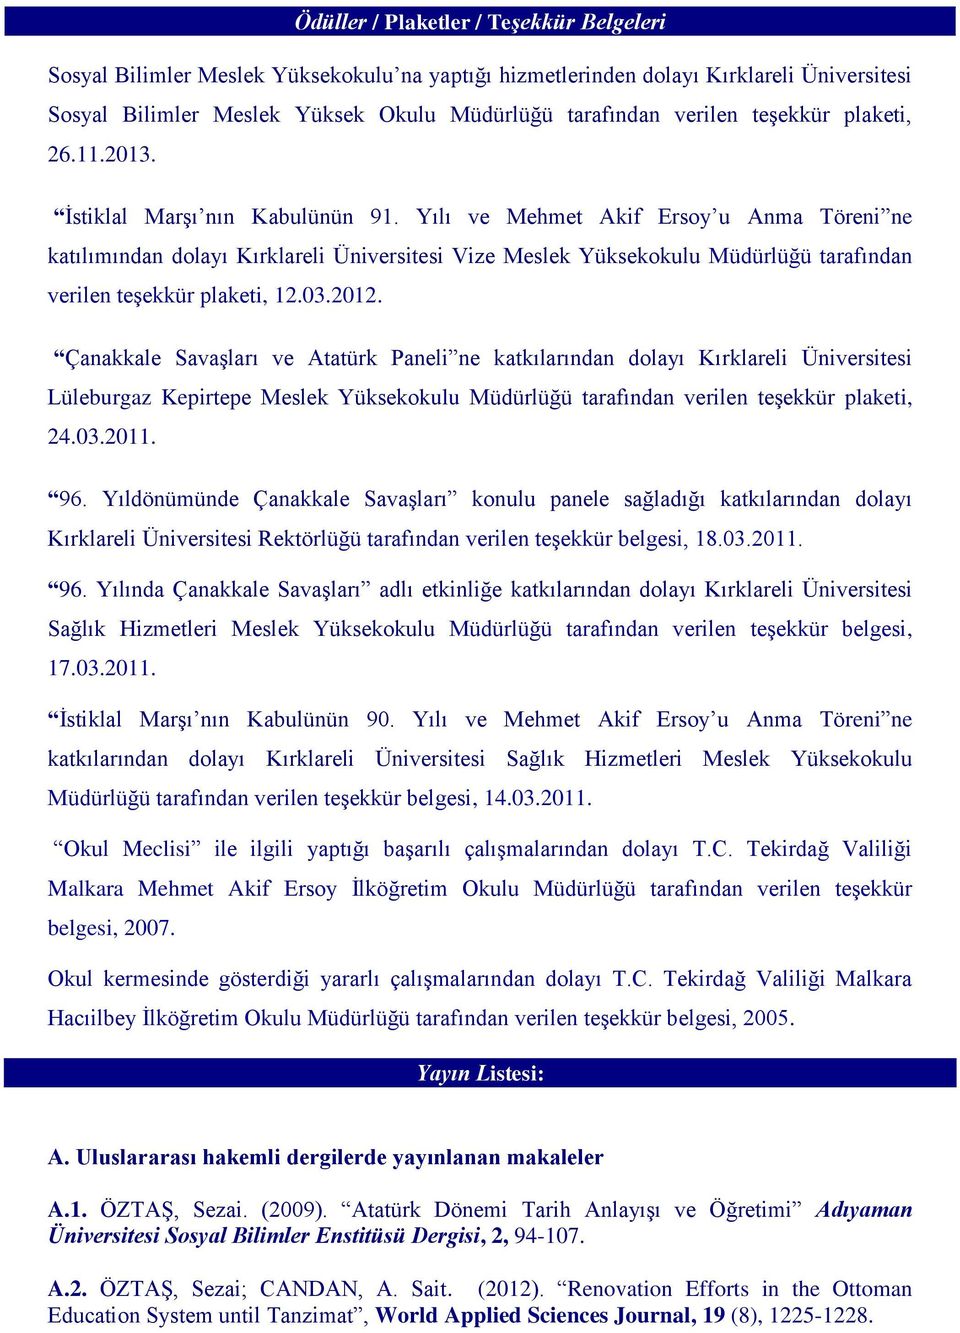 Çanakkale Savaşları ve Atatürk Paneli ne katkılarından dolayı Lüleburgaz Kepirtepe Meslek Yüksekokulu Müdürlüğü tarafından verilen teşekkür plaketi, 24.03.2011. 96.